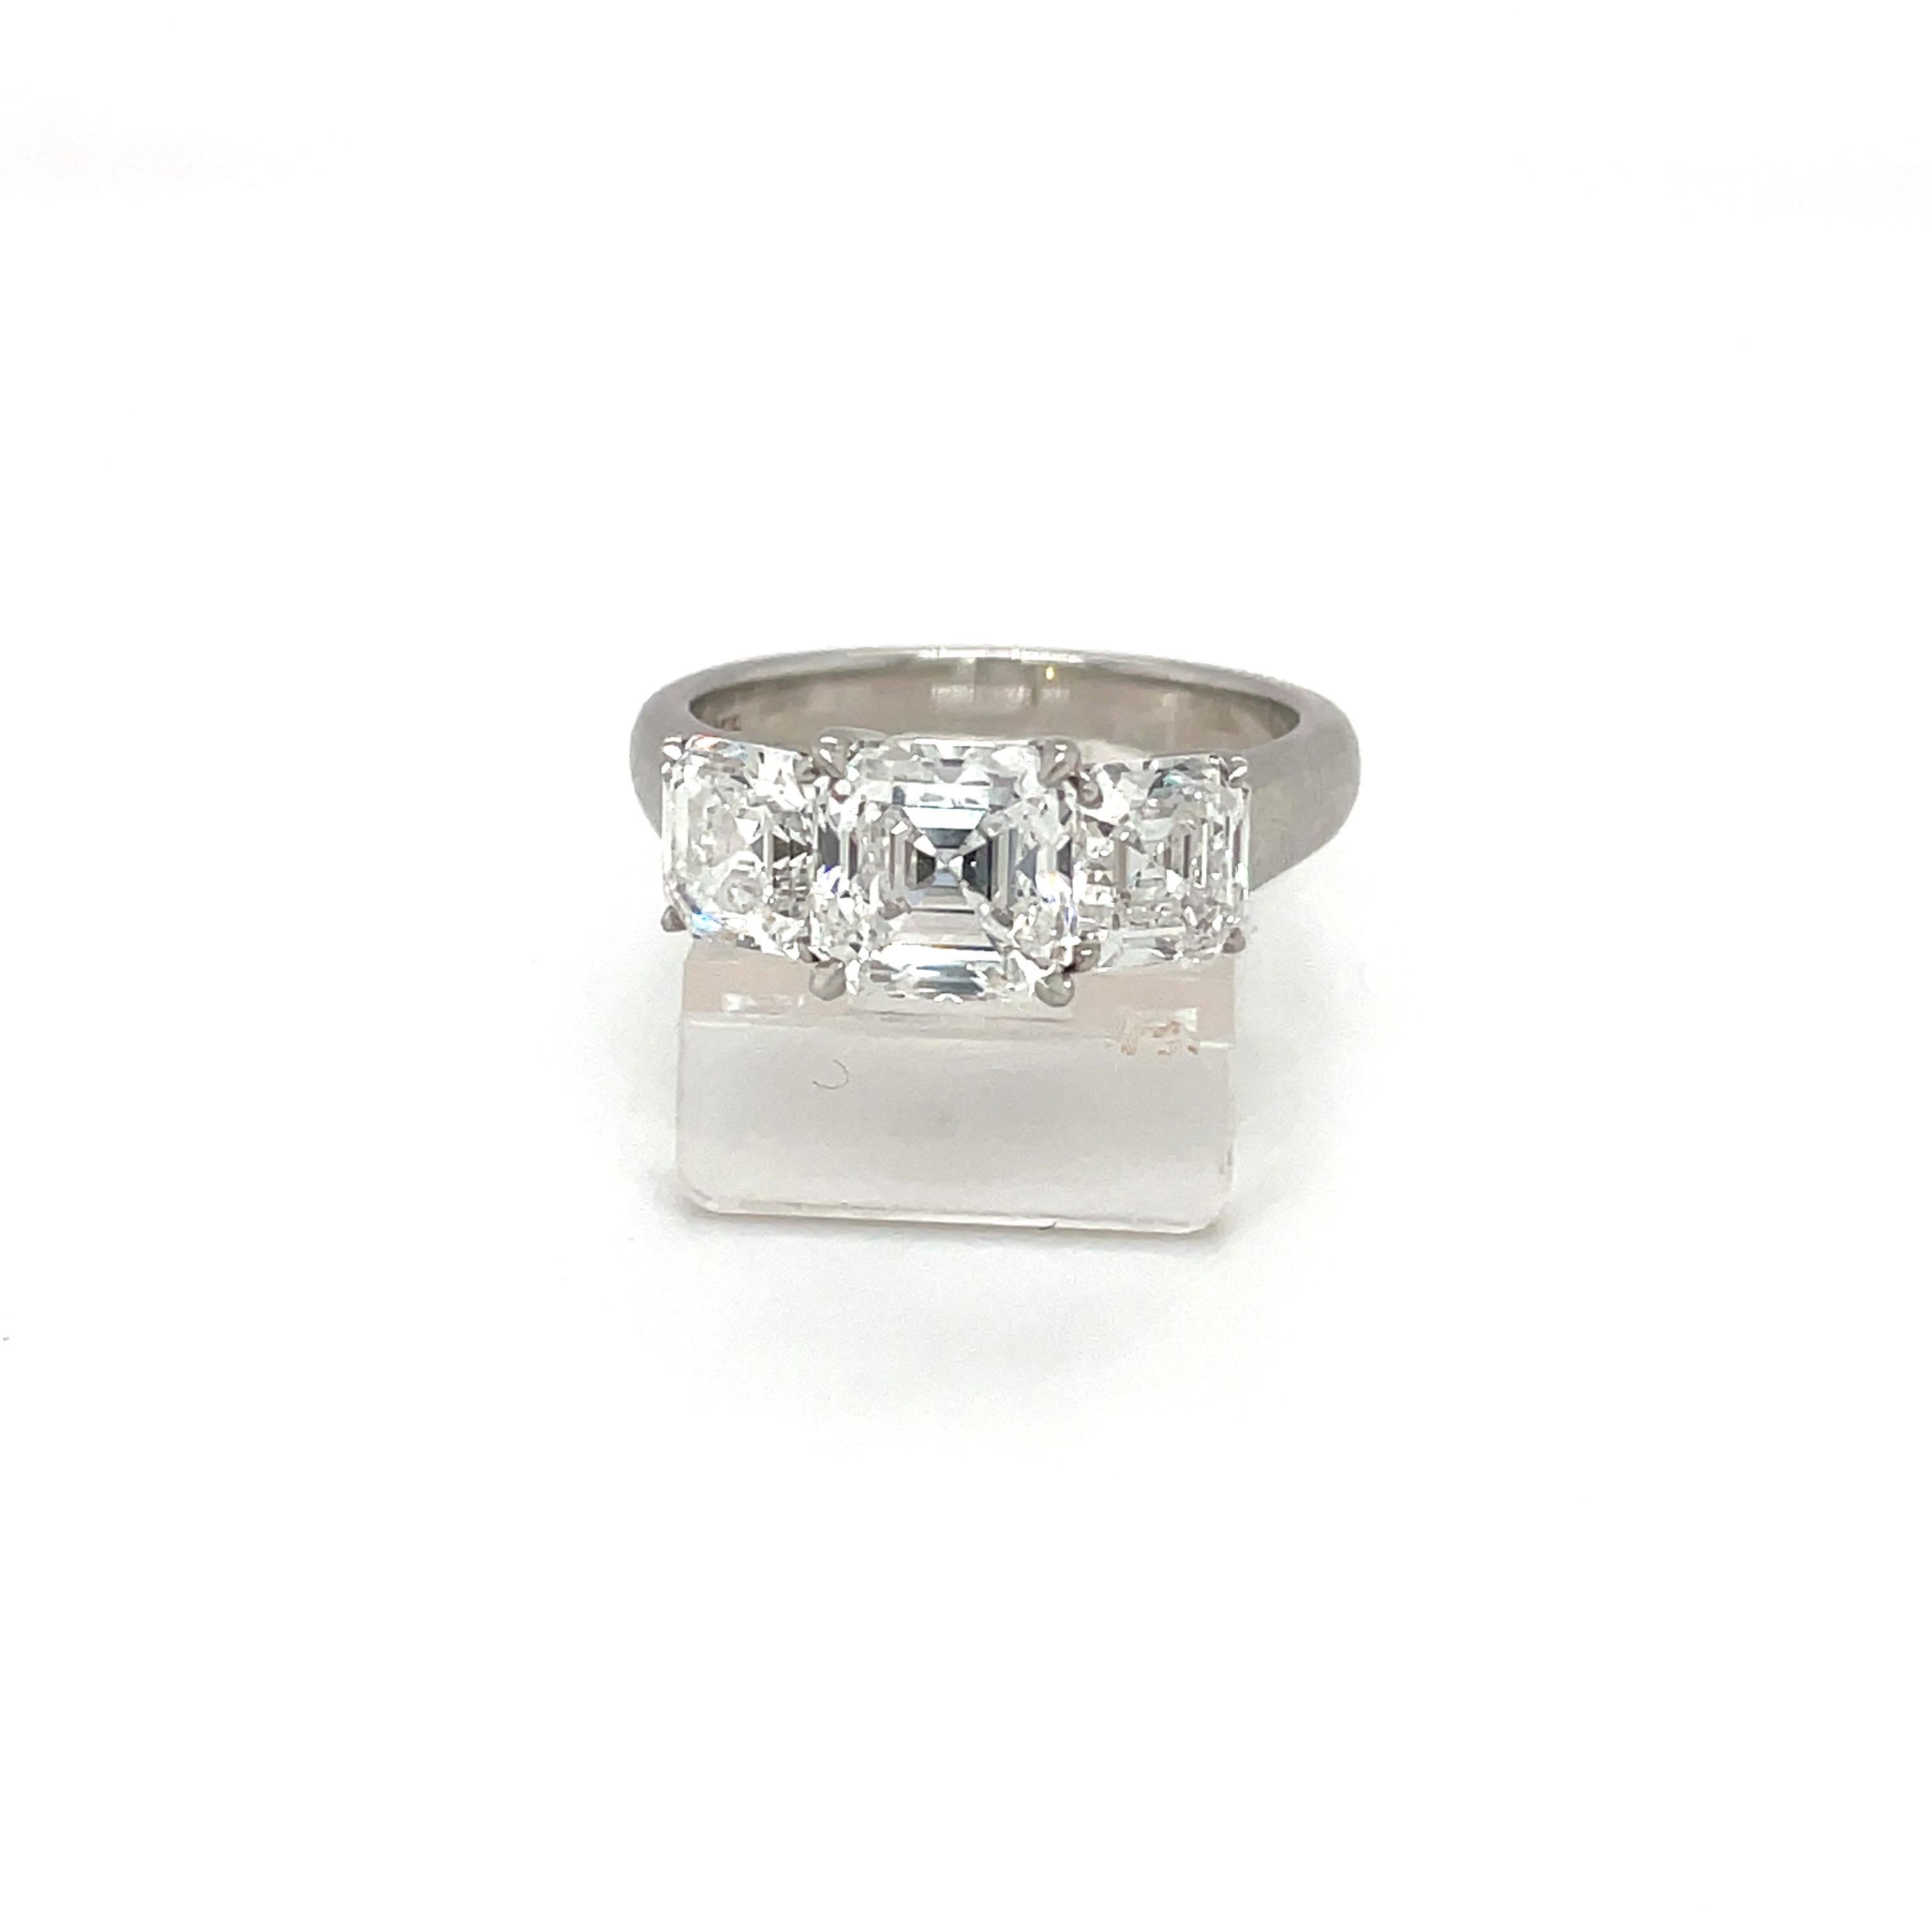 Dieser klassische und bezaubernde Ring enthält einen quadratischen Smaragddiamanten von 1,59 Karat, Farbe E und Reinheit VVS2... In einem traditionellen Dreisteinring mit perfekt aufeinander abgestimmten, quadratischen Smaragd-Seitensteinen von je